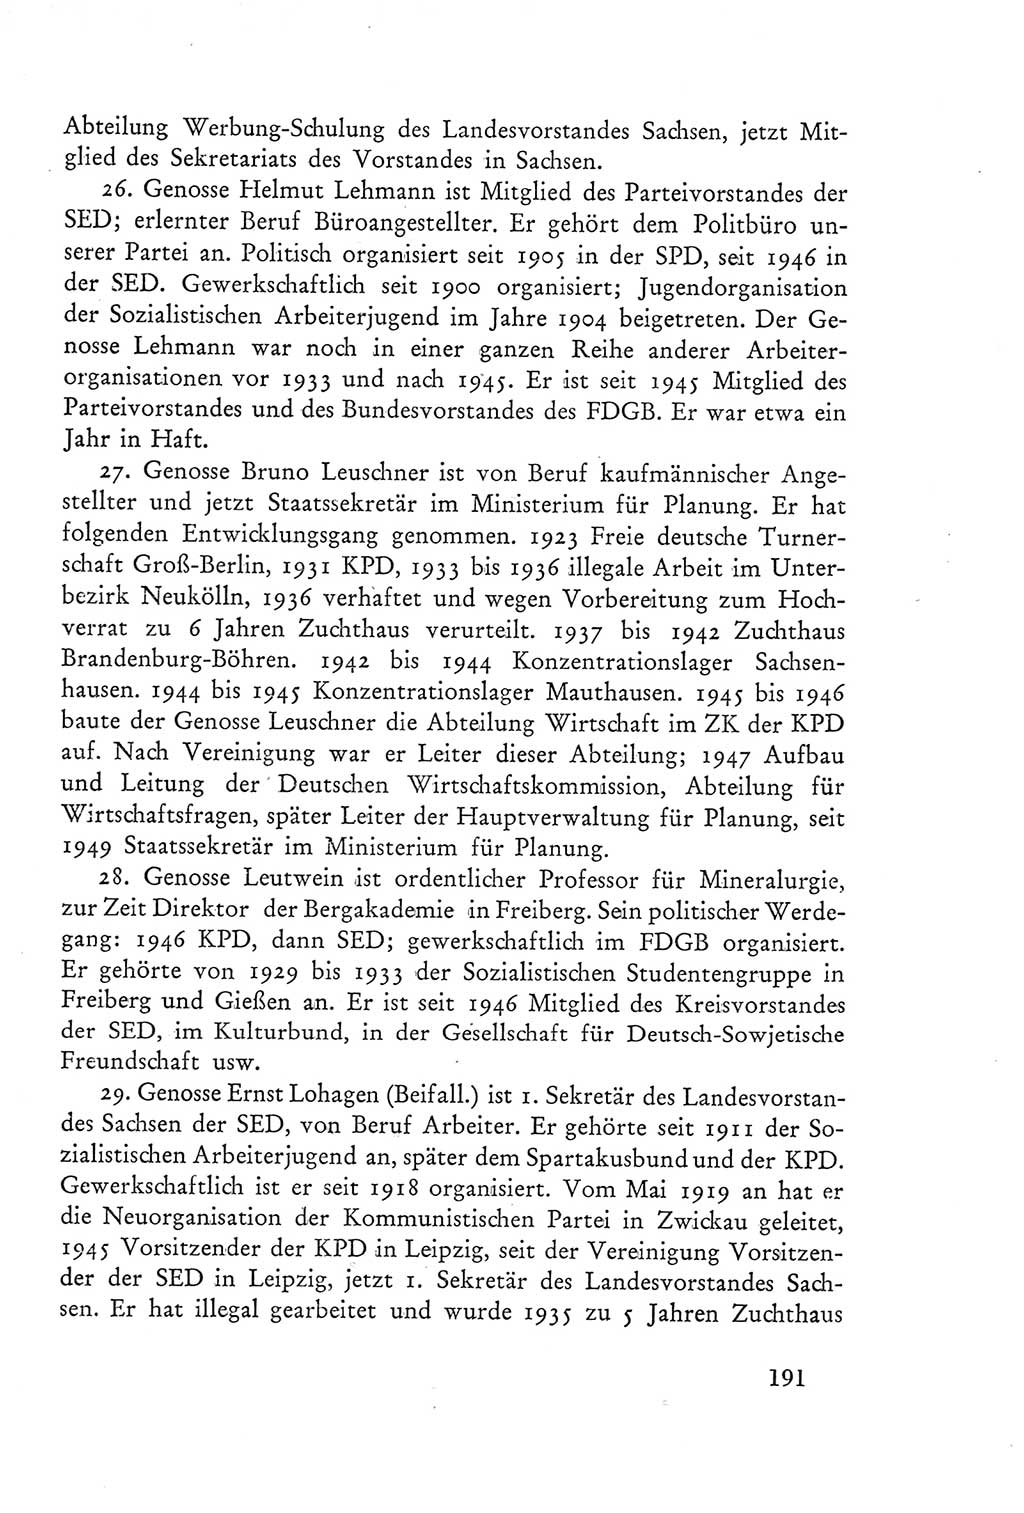 Protokoll der Verhandlungen des Ⅲ. Parteitages der Sozialistischen Einheitspartei Deutschlands (SED) [Deutsche Demokratische Republik (DDR)] 1950, Band 2, Seite 191 (Prot. Verh. Ⅲ. PT SED DDR 1950, Bd. 2, S. 191)